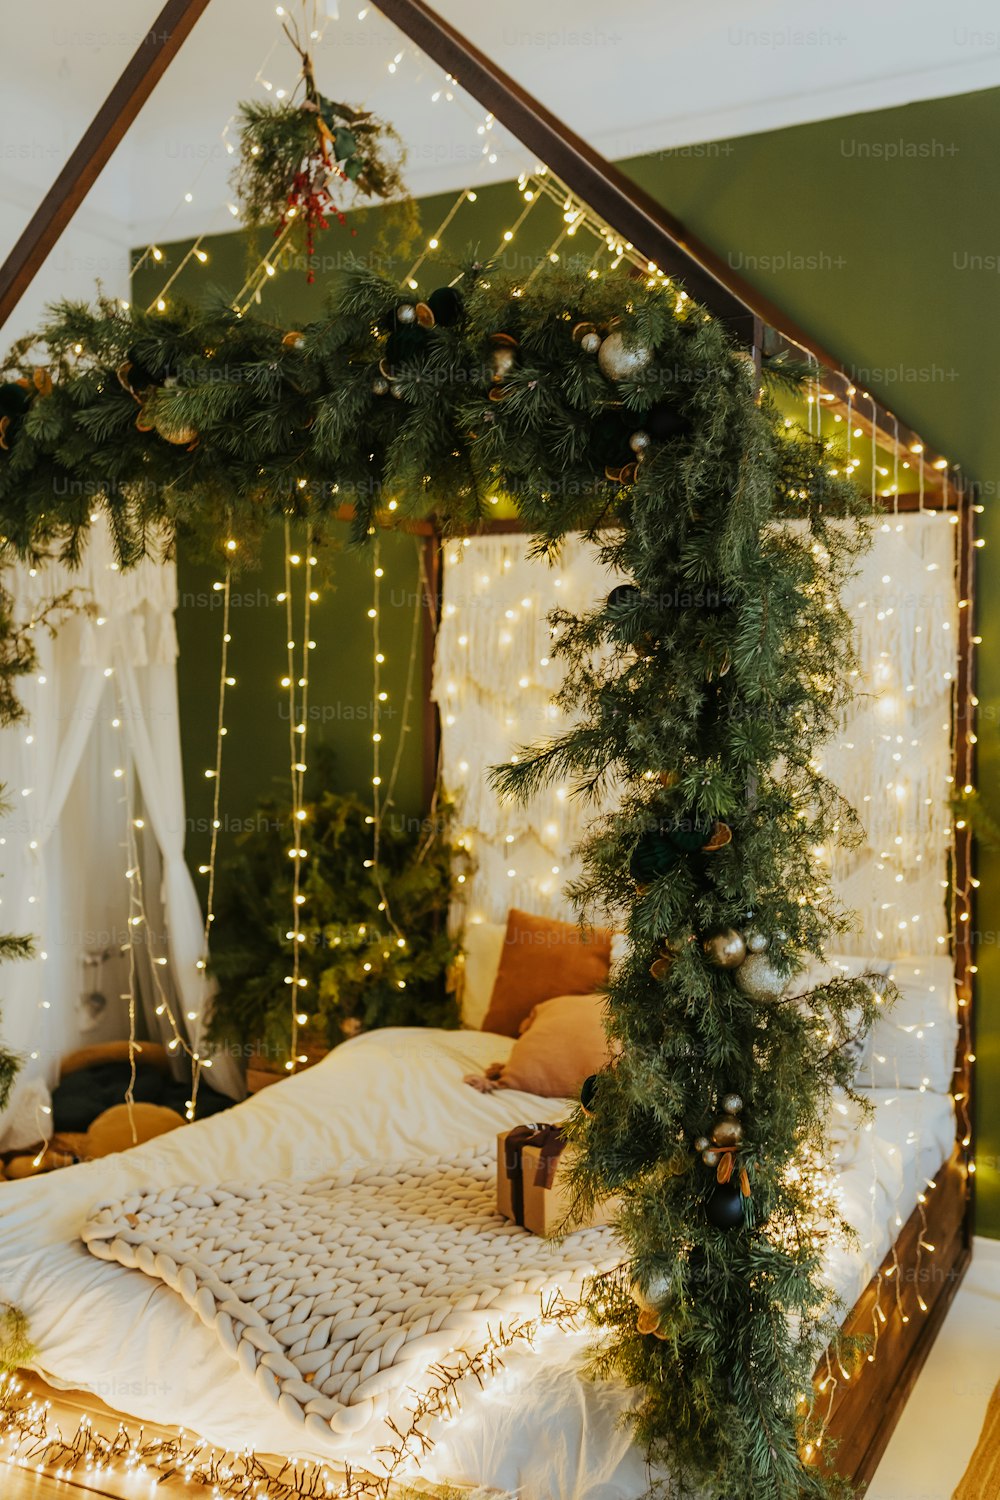 Un letto con baldacchino ricoperto di luci natalizie